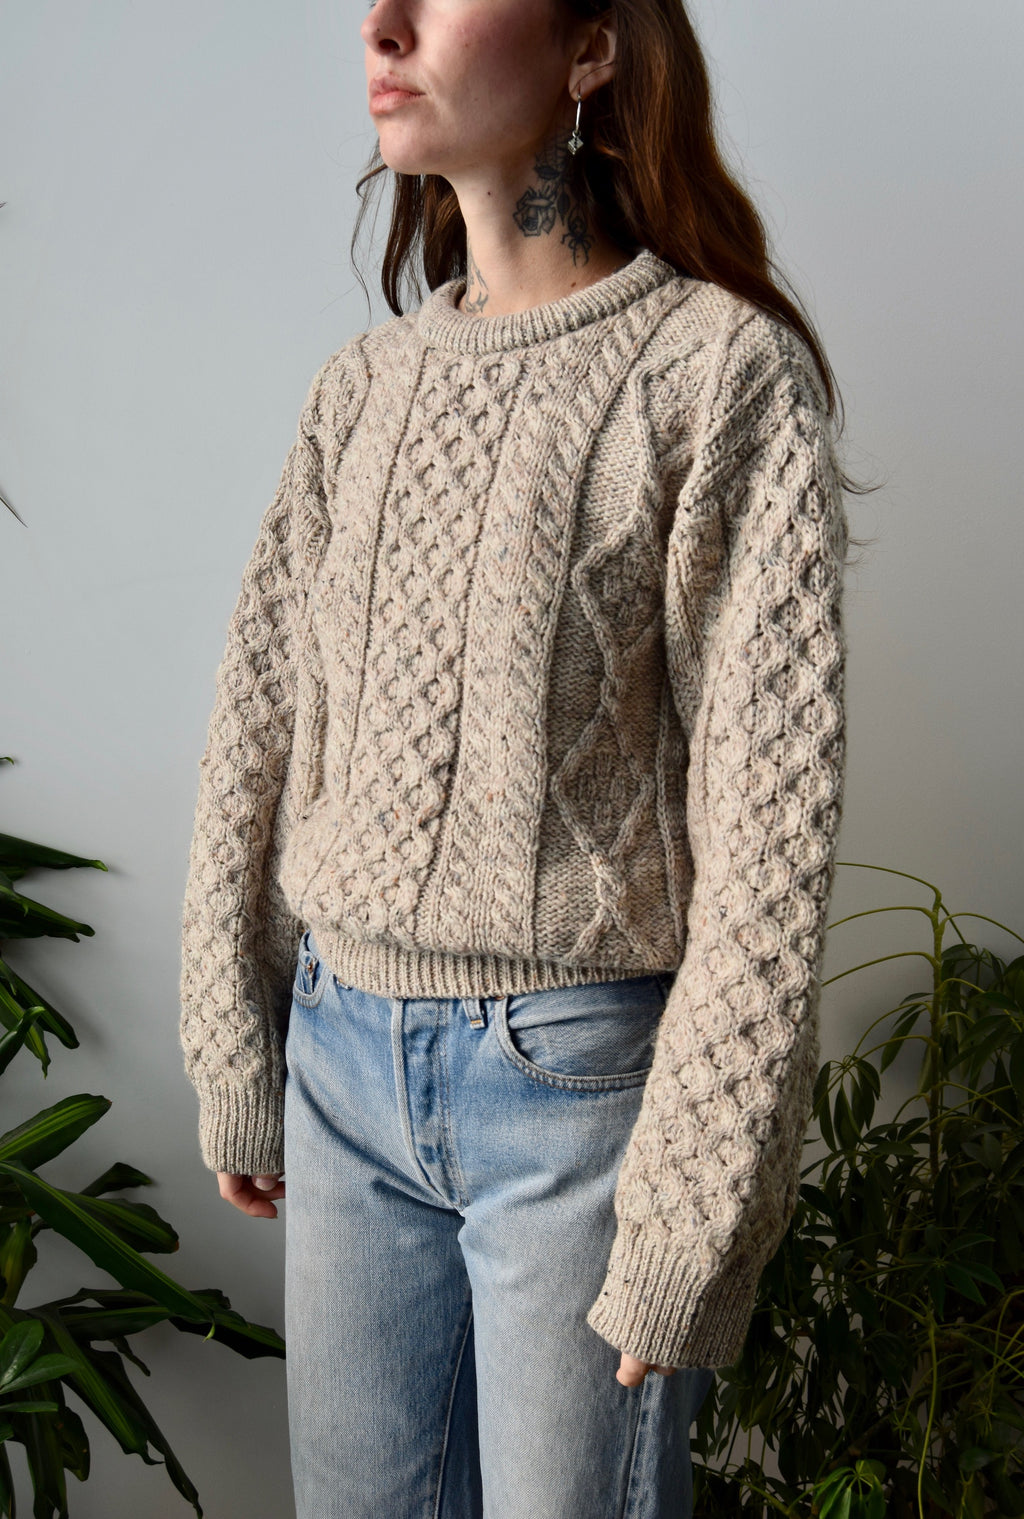 Oatmeal Irish Knit Sweater